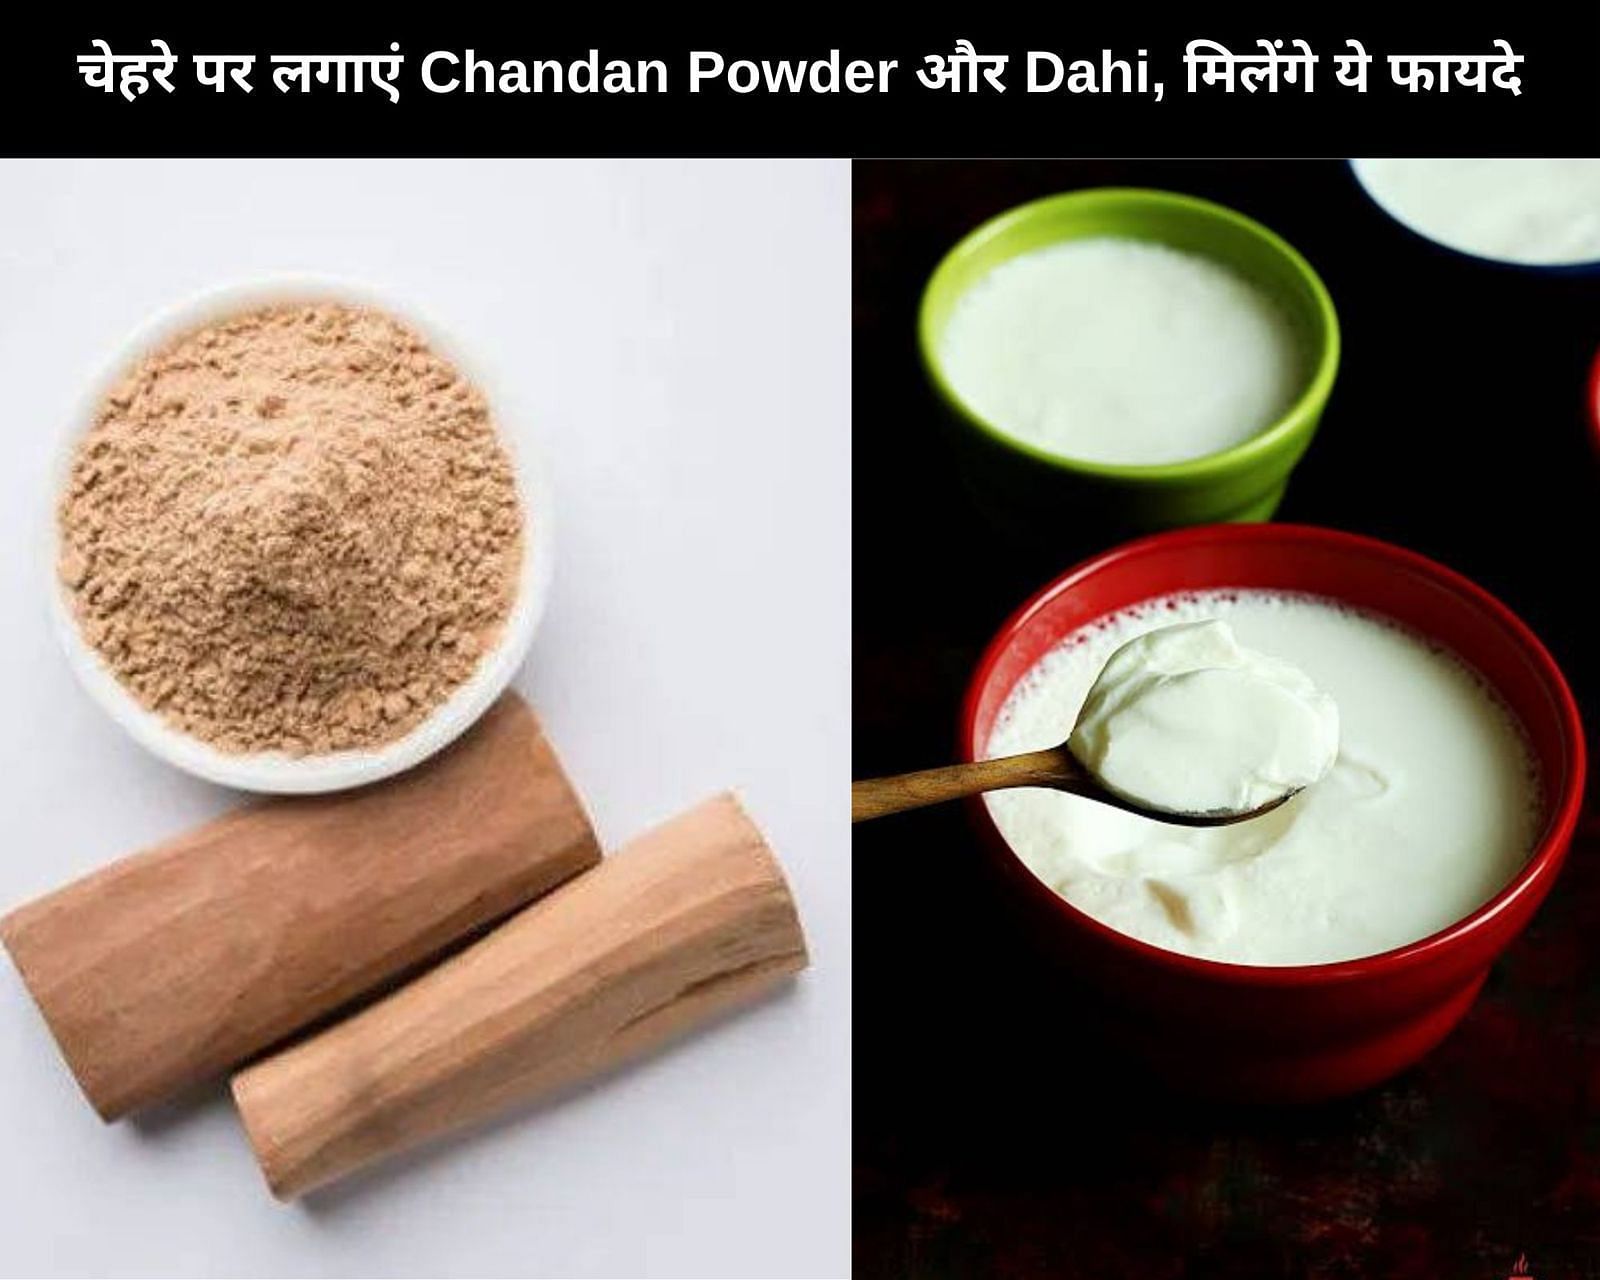 चेहरे पर लगाएं Chandan Powder और Dahi, मिलेंगे ये 7 फायदे (फोटो - sportskeedaहिन्दी)